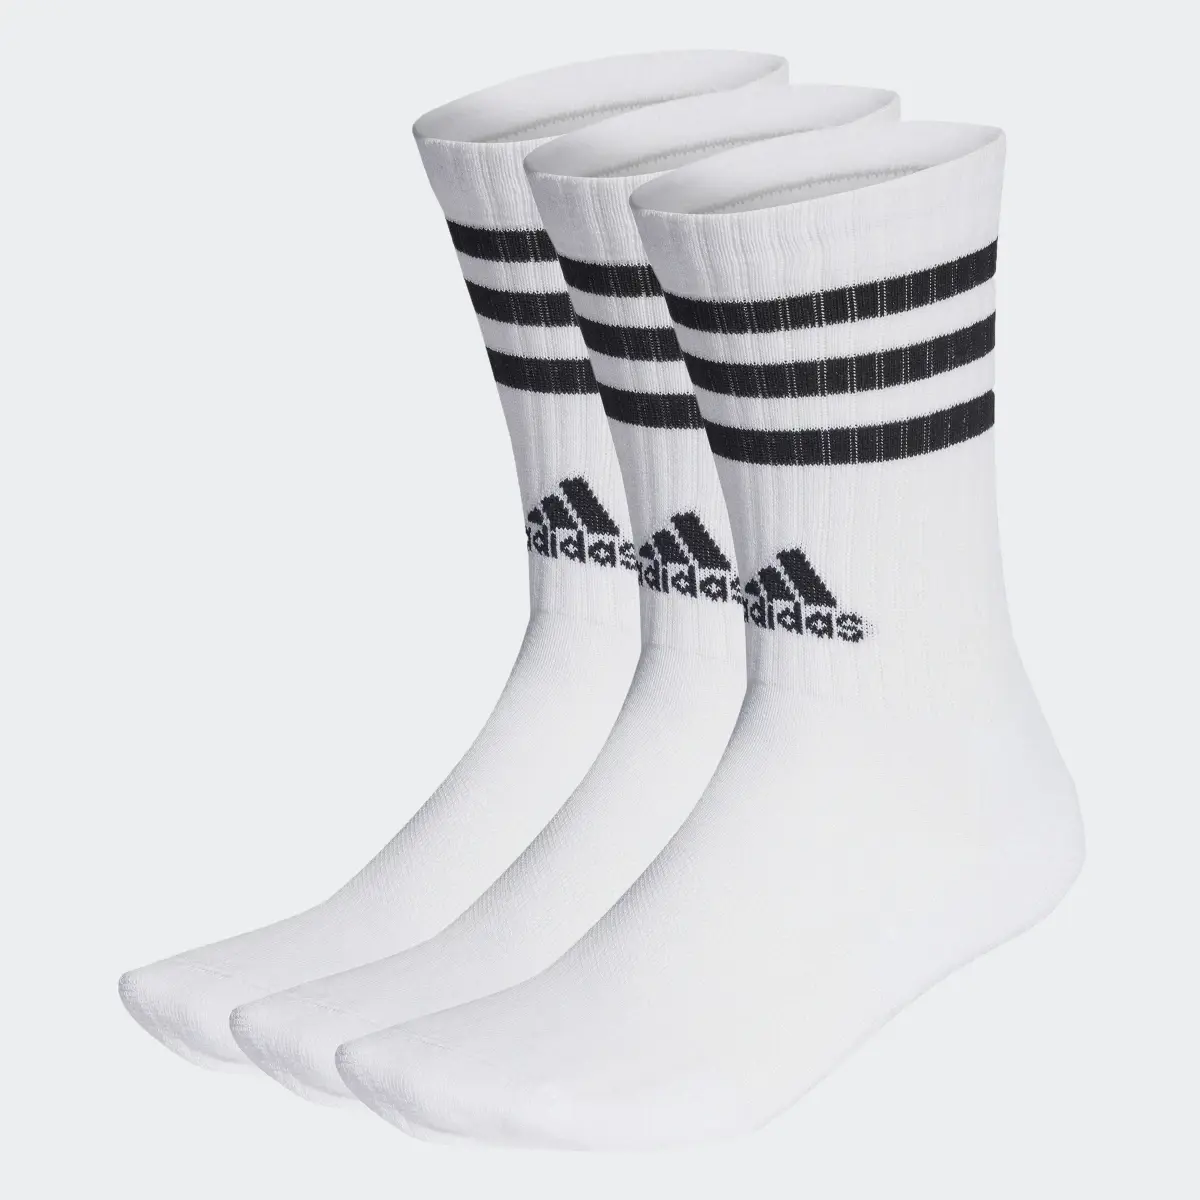 Adidas Meias de Cano Médio Acolchoadas 3-Stripes – 3 pares. 2